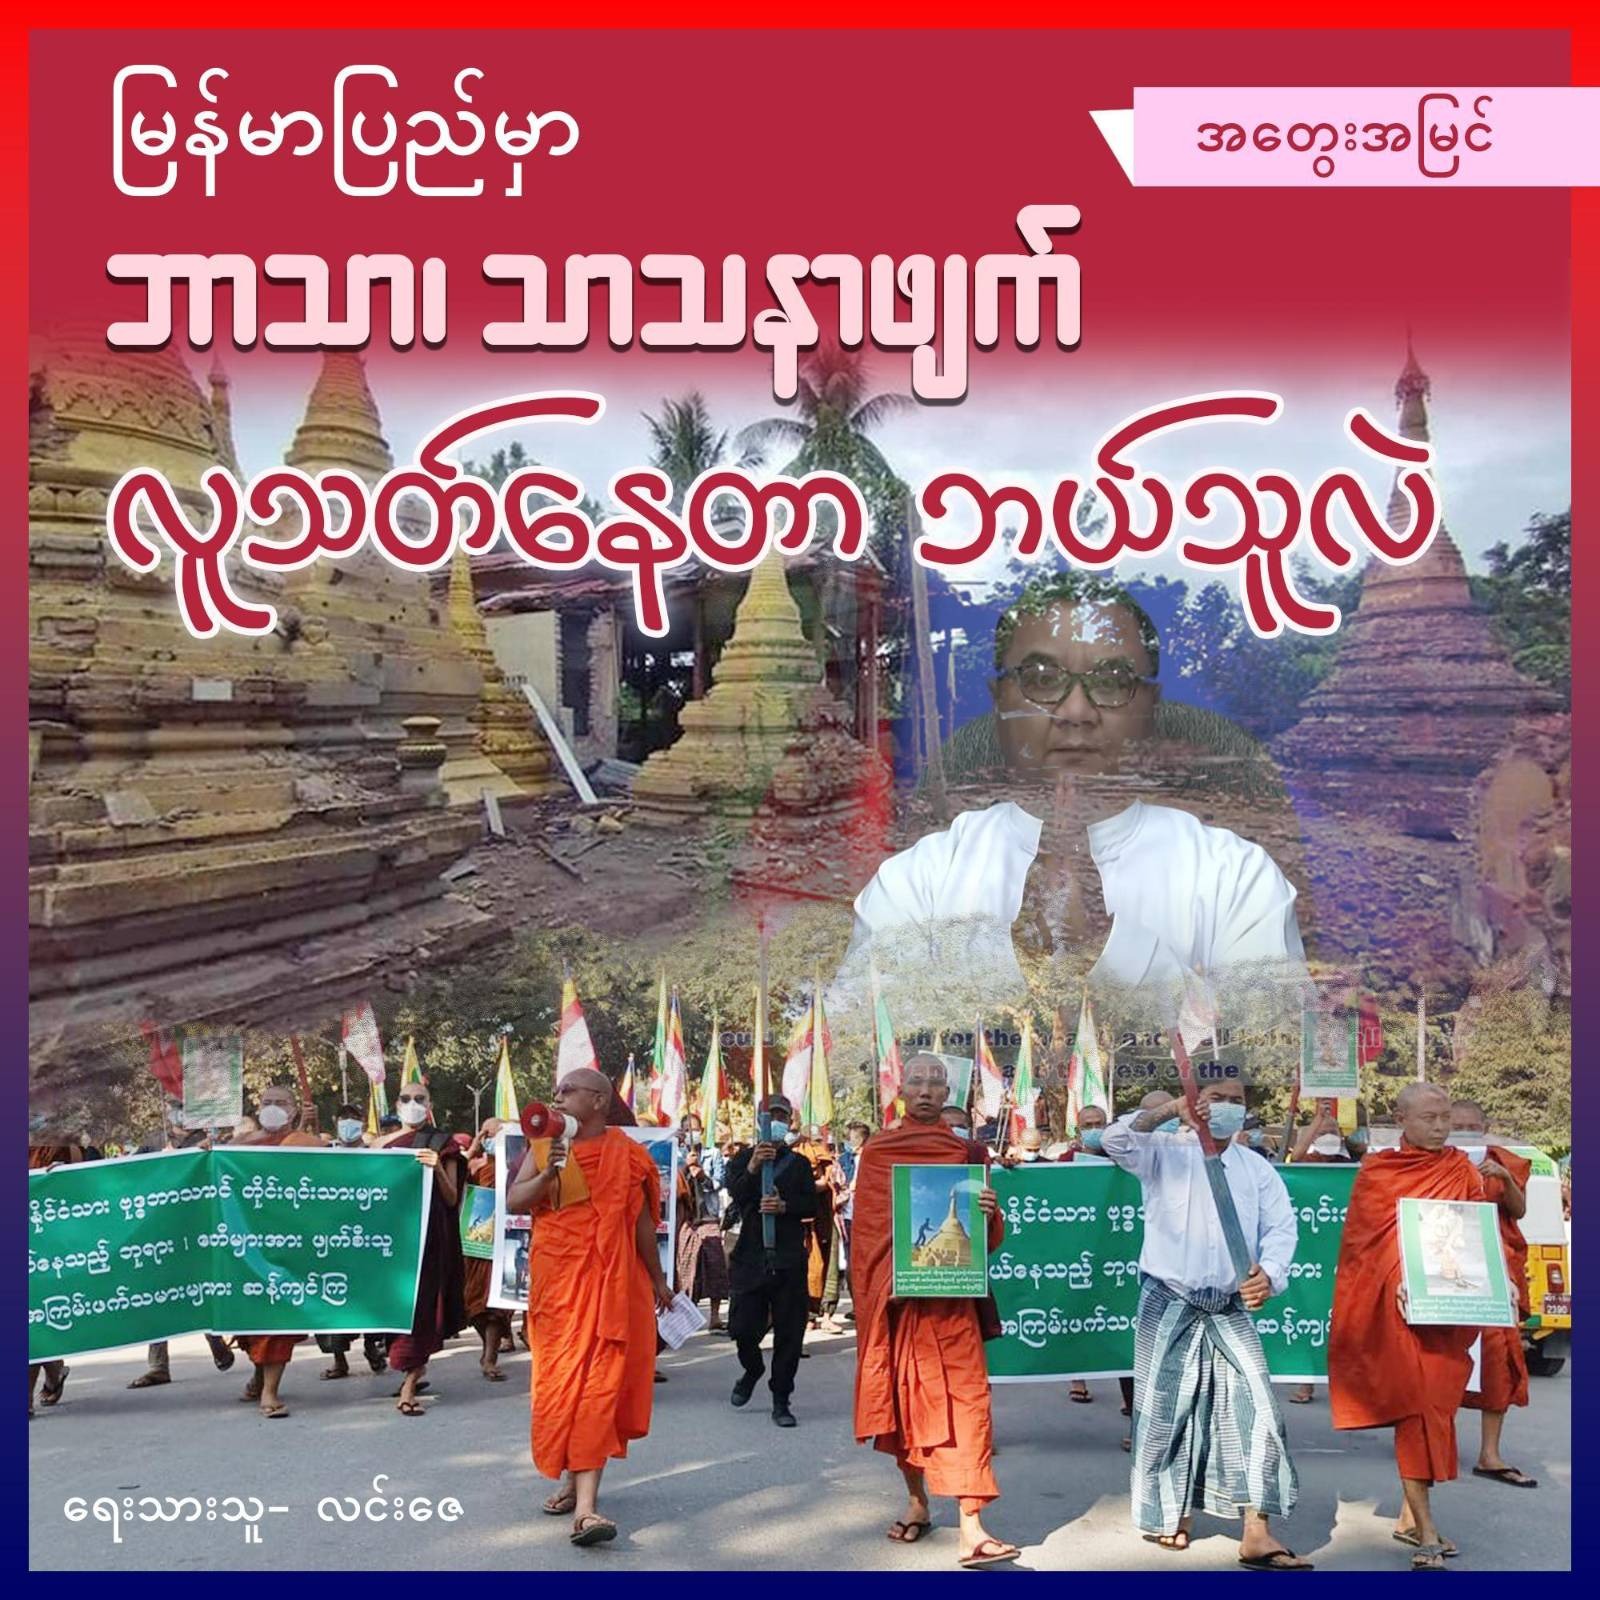 မြန်မာပြည်မှာ ဘာသာ၊ သာသနာဖျက်၊ လူသတ်နေတာ ဘယ်သူလဲ (အတွေးအမြင်)